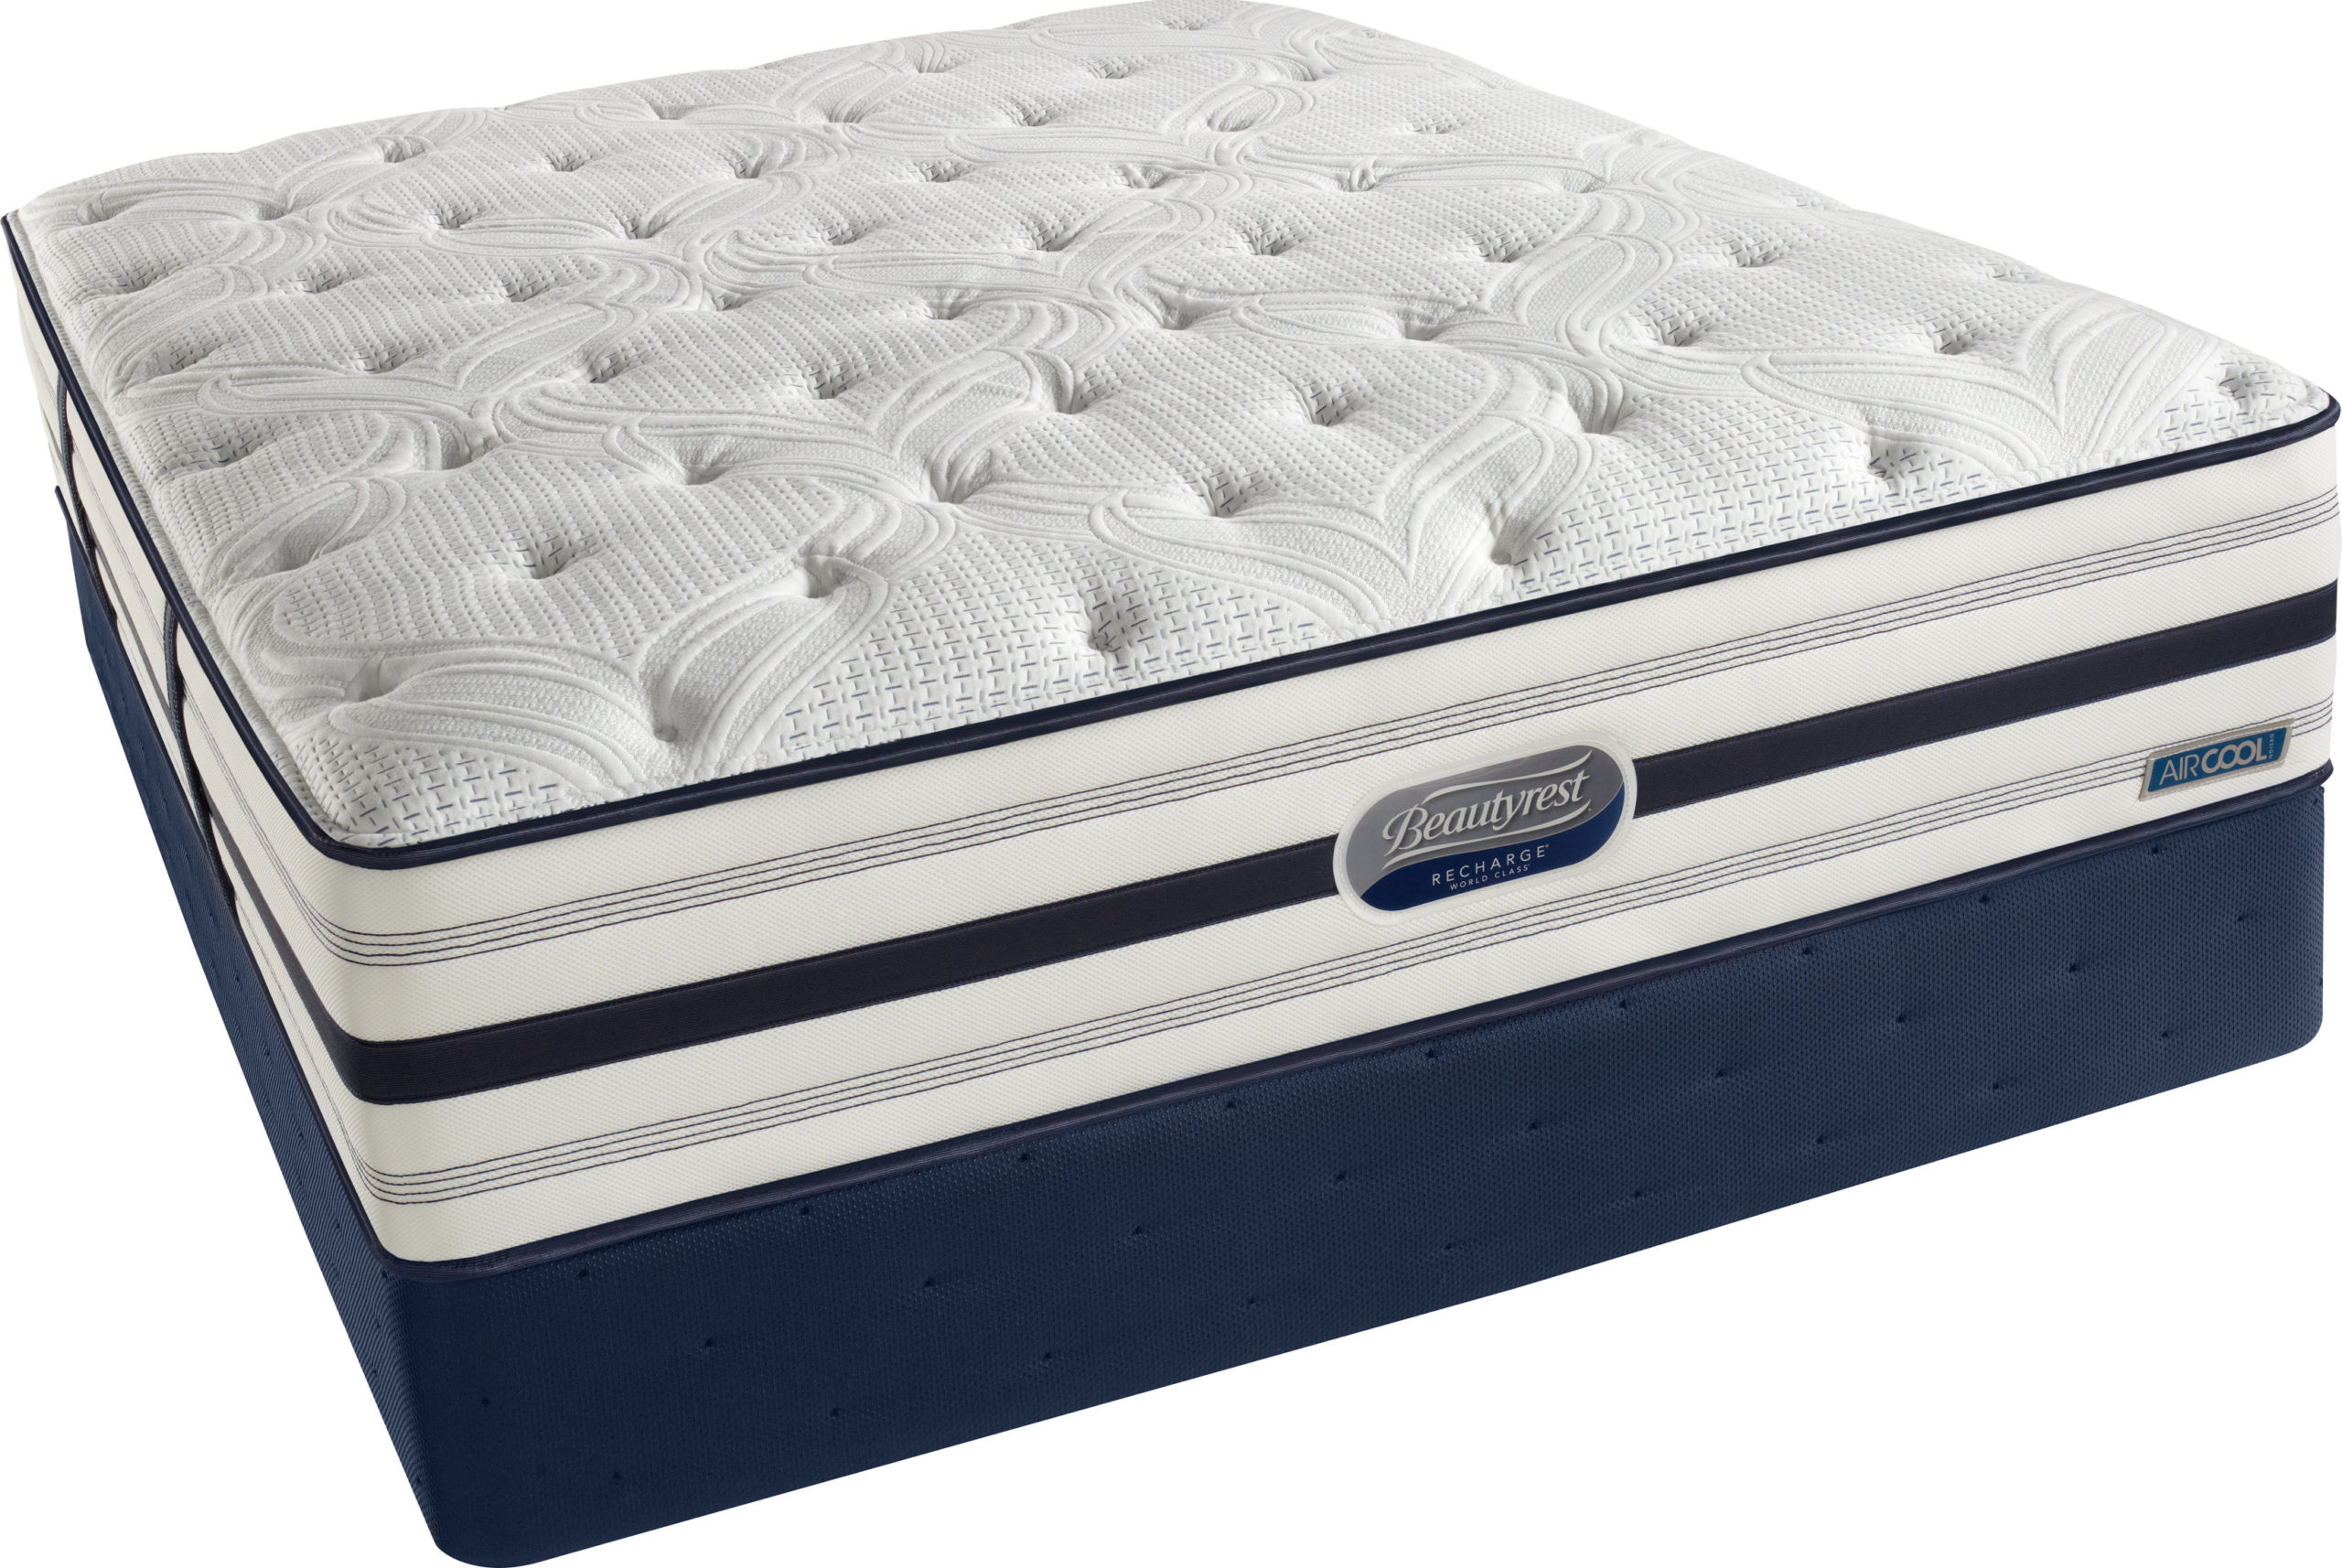 beautyrest silver pacific heights plush pillowtop mattress